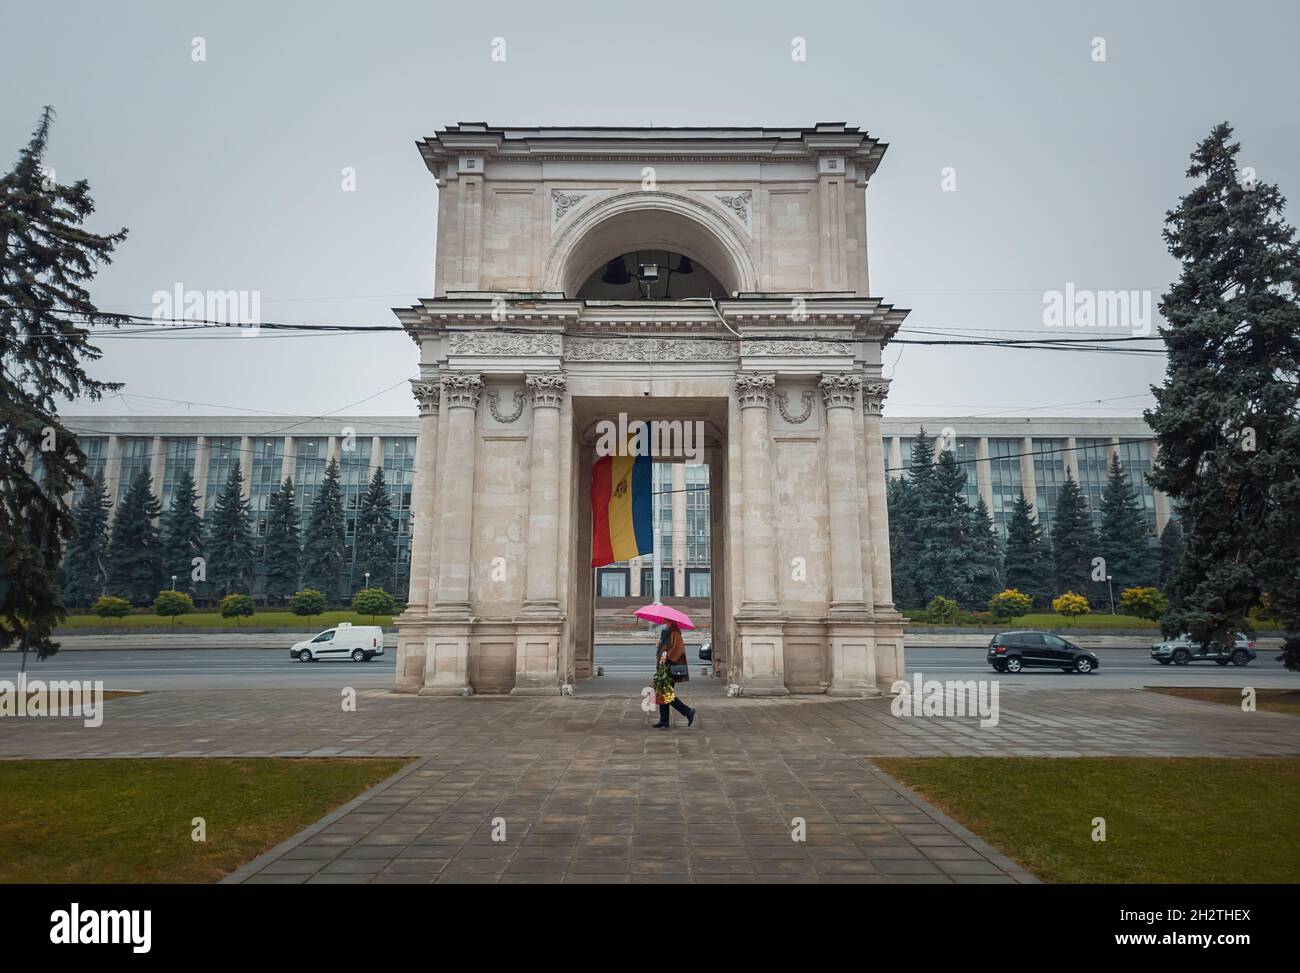 Arche triomphale devant le bâtiment du gouvernement, Chisinau, Moldova.Monuments historiques de la capitale Banque D'Images